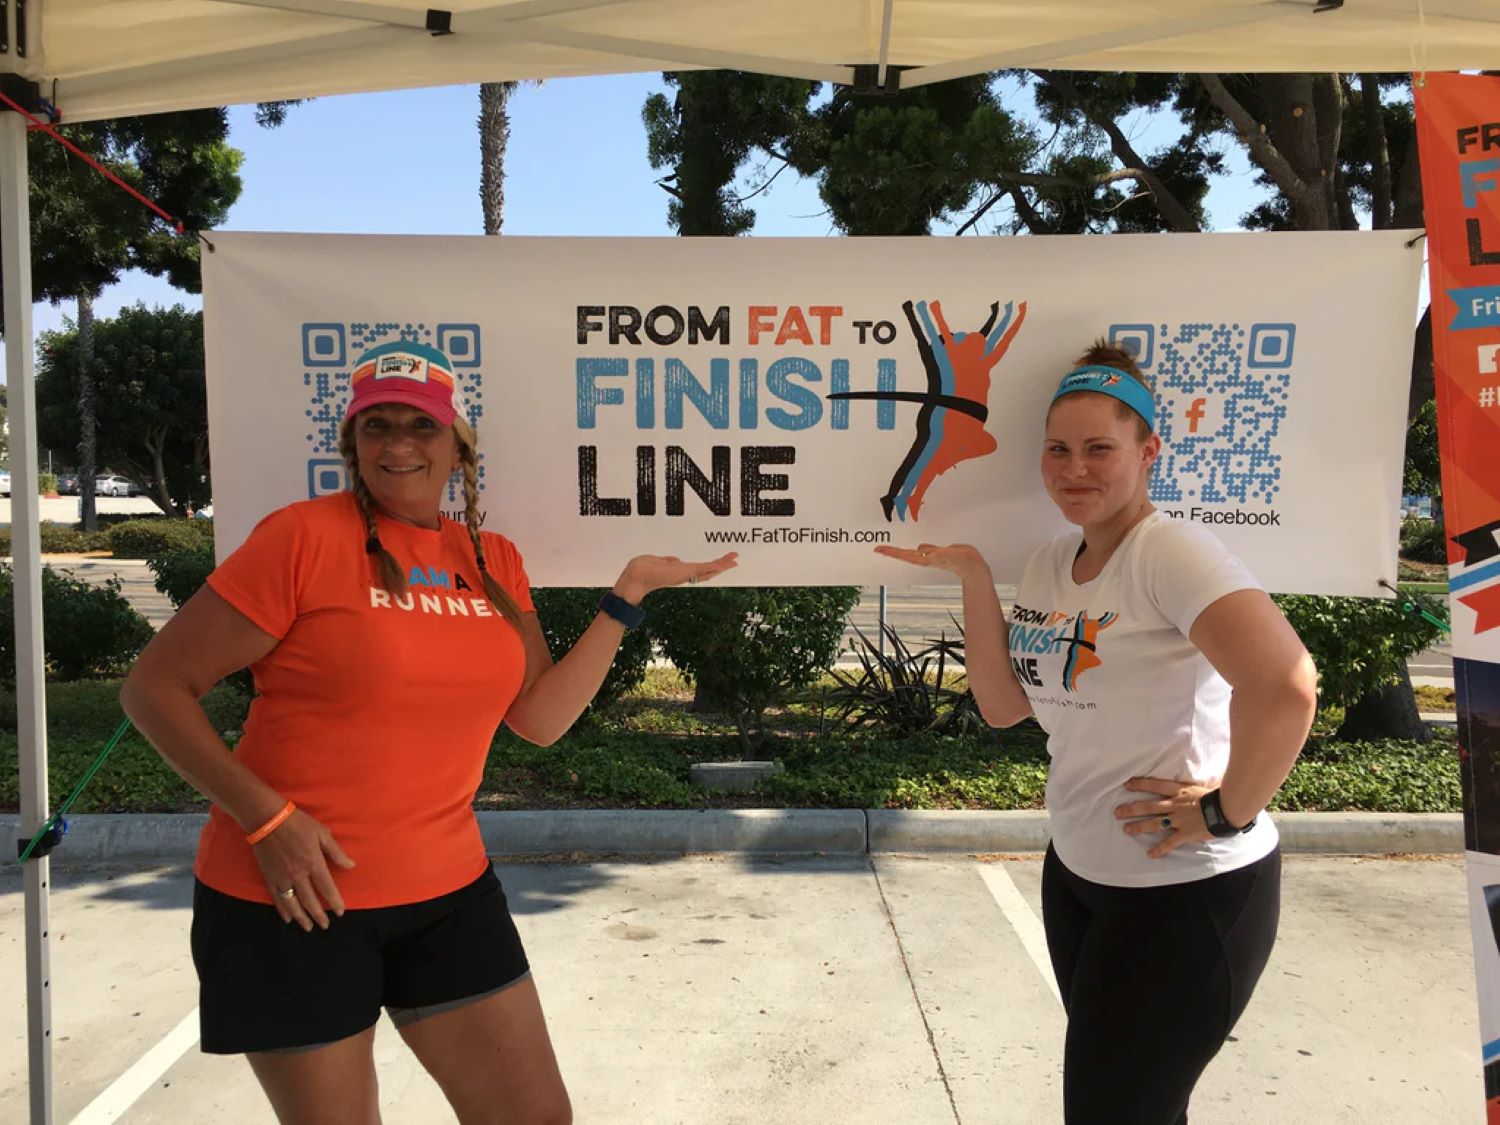 Gezeigt sind zwei Frauen in Sportkleidung, die vor einem weißen Banner stehen. Auf dem Banner steht "from fat to finish line."